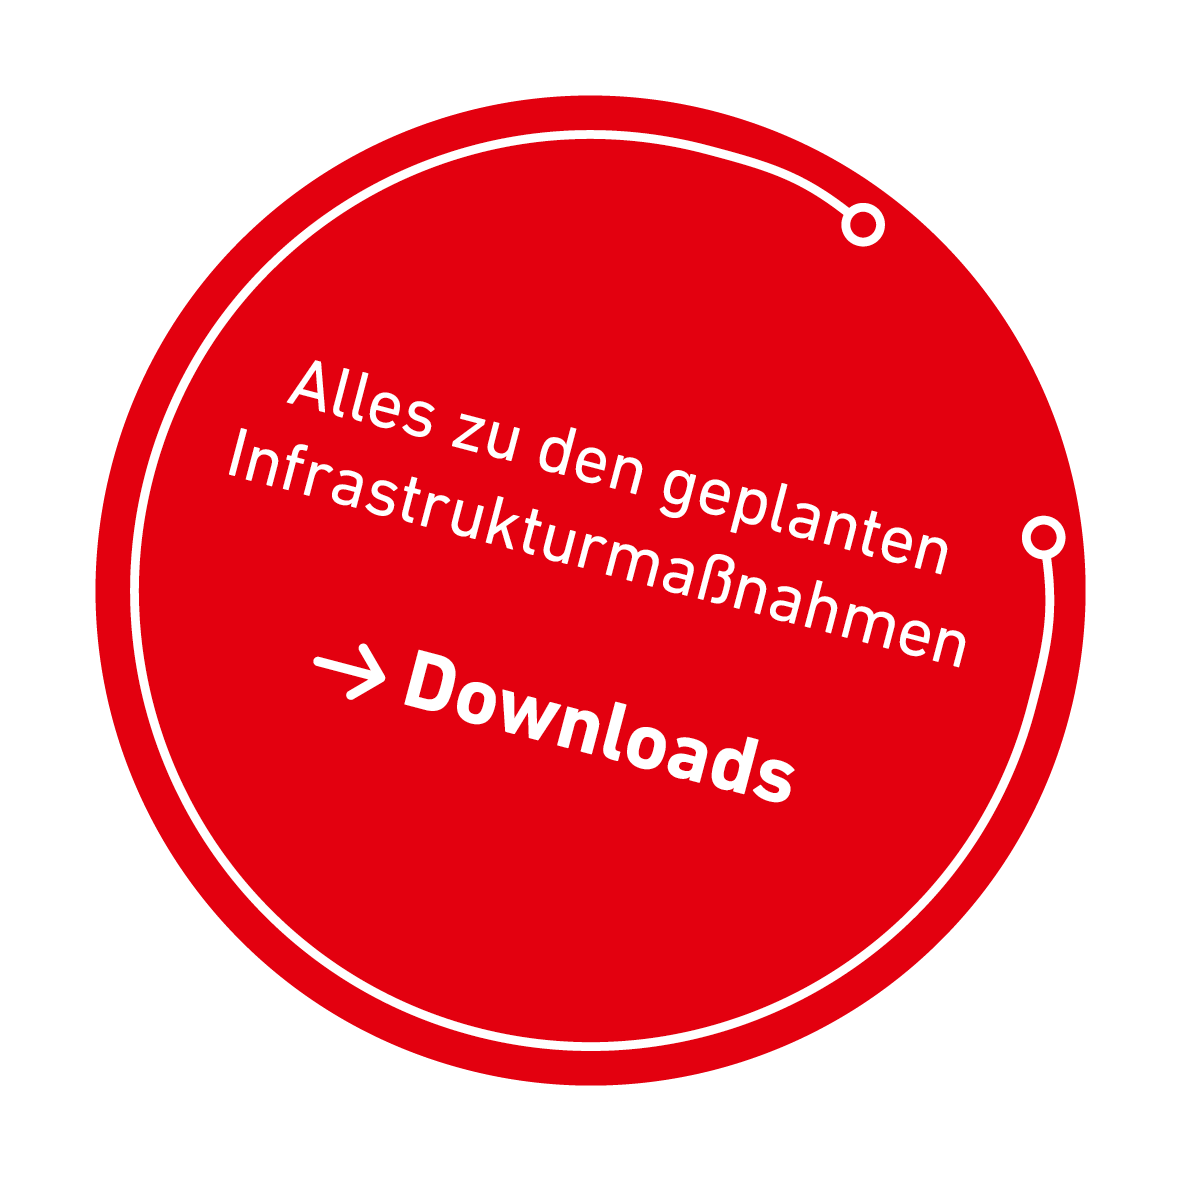 Der Button ist rot, rund und zeigt den Text "Alles zu den geplanten Infrastrukturmaßnahmen" und verlinkt zu Downloads.